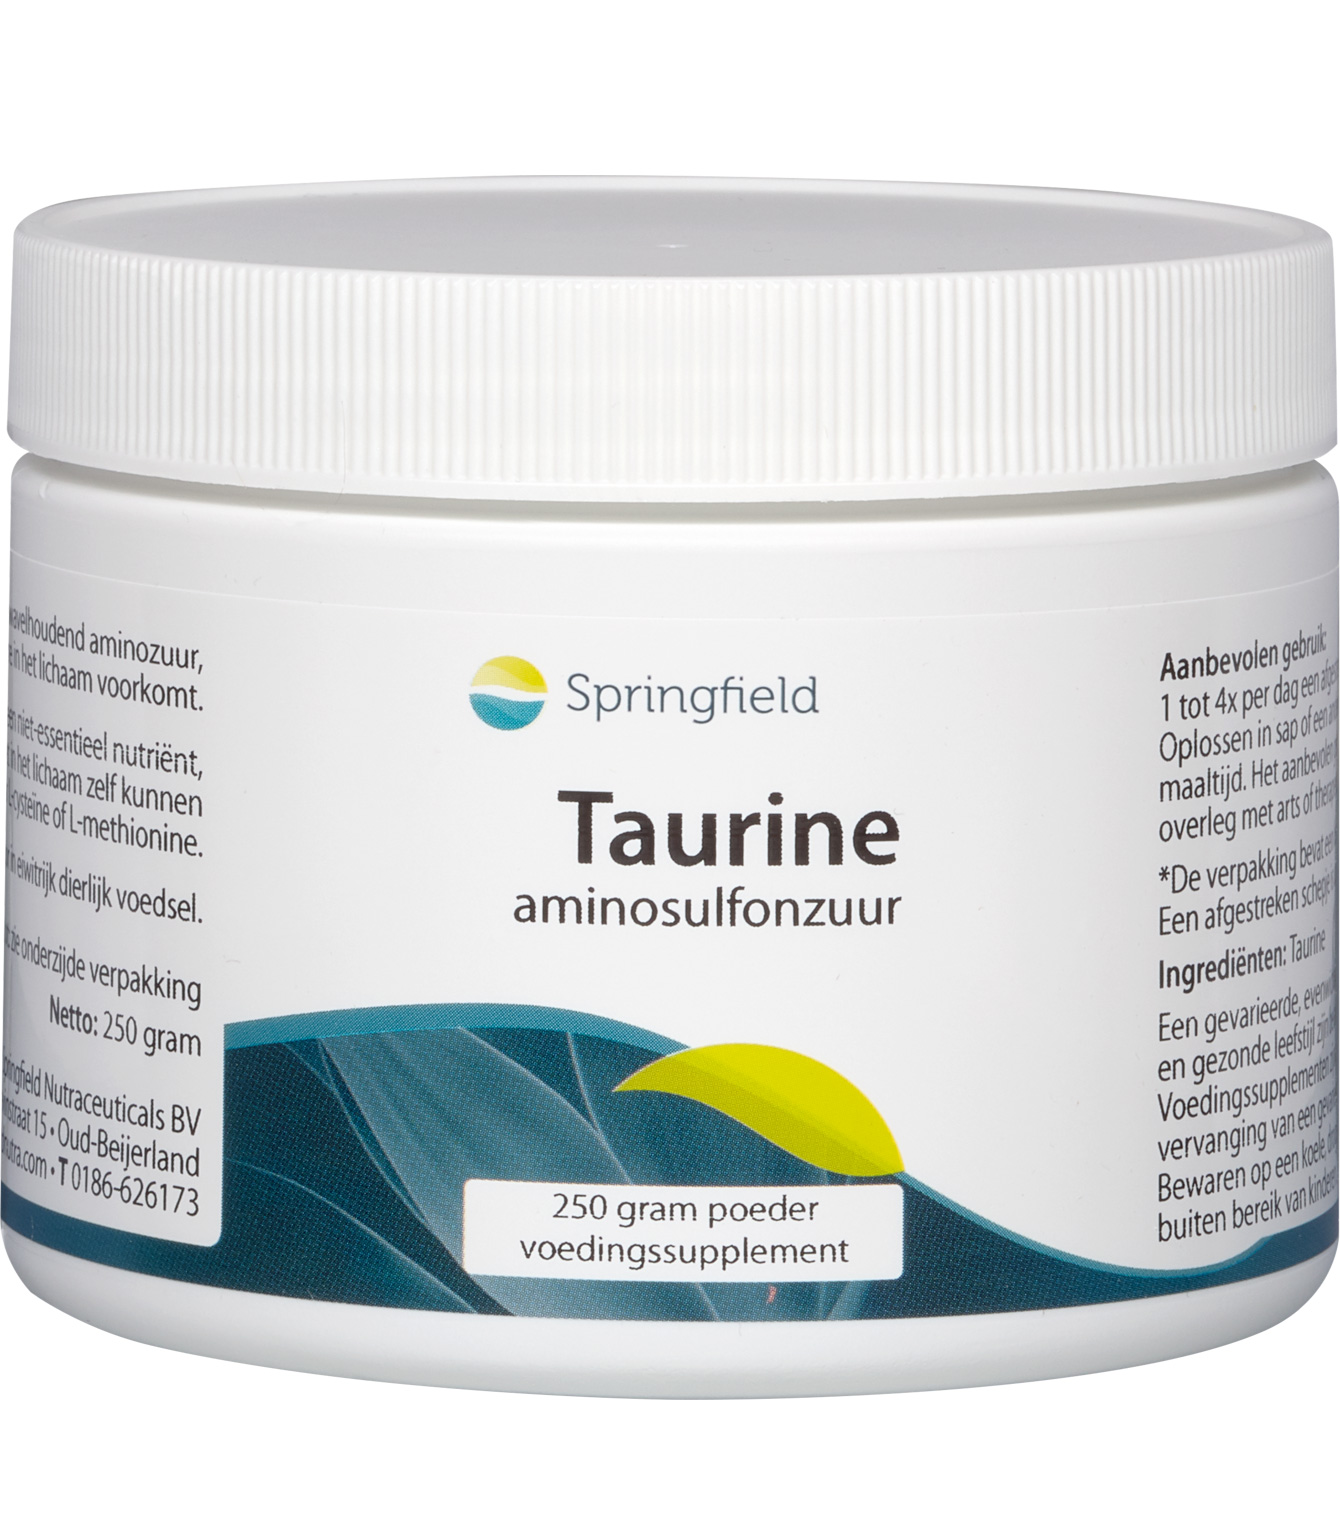 Taurine gesynthetiseerd uit cysteïne en methionine